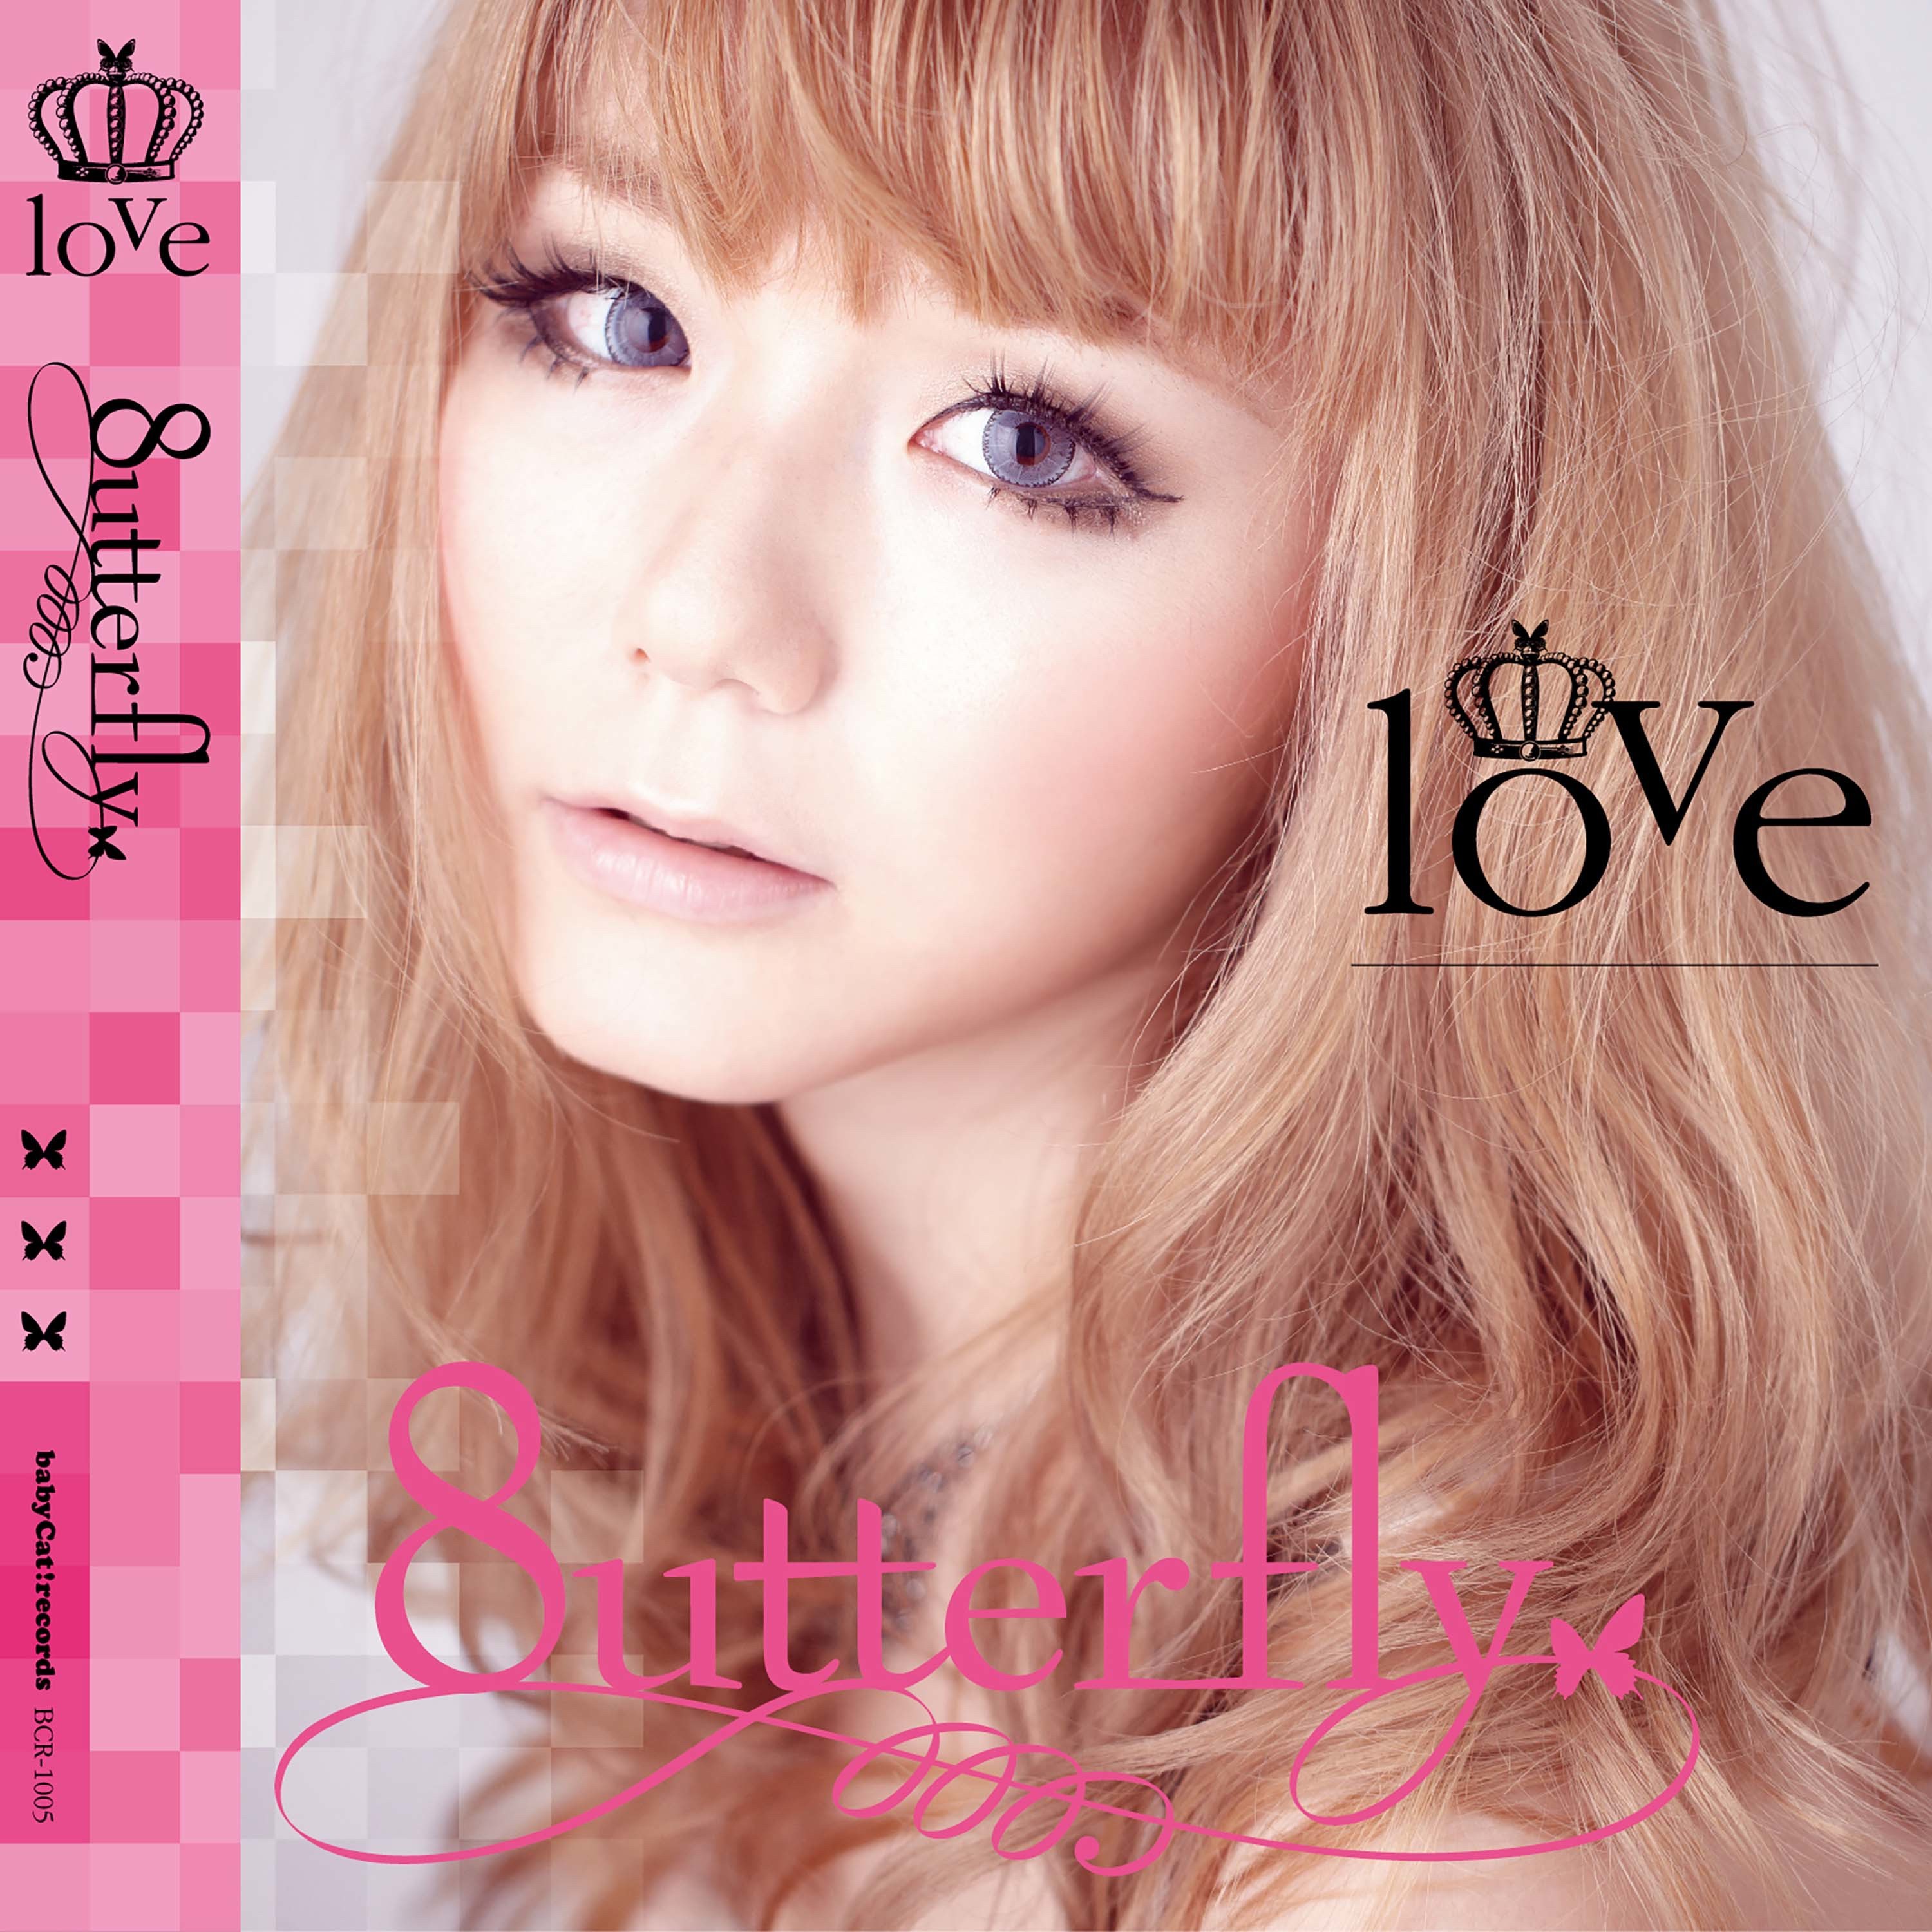 [Album] 8utterfly – love (2013-06-05) [FLAC 24bit/44,1kHz]